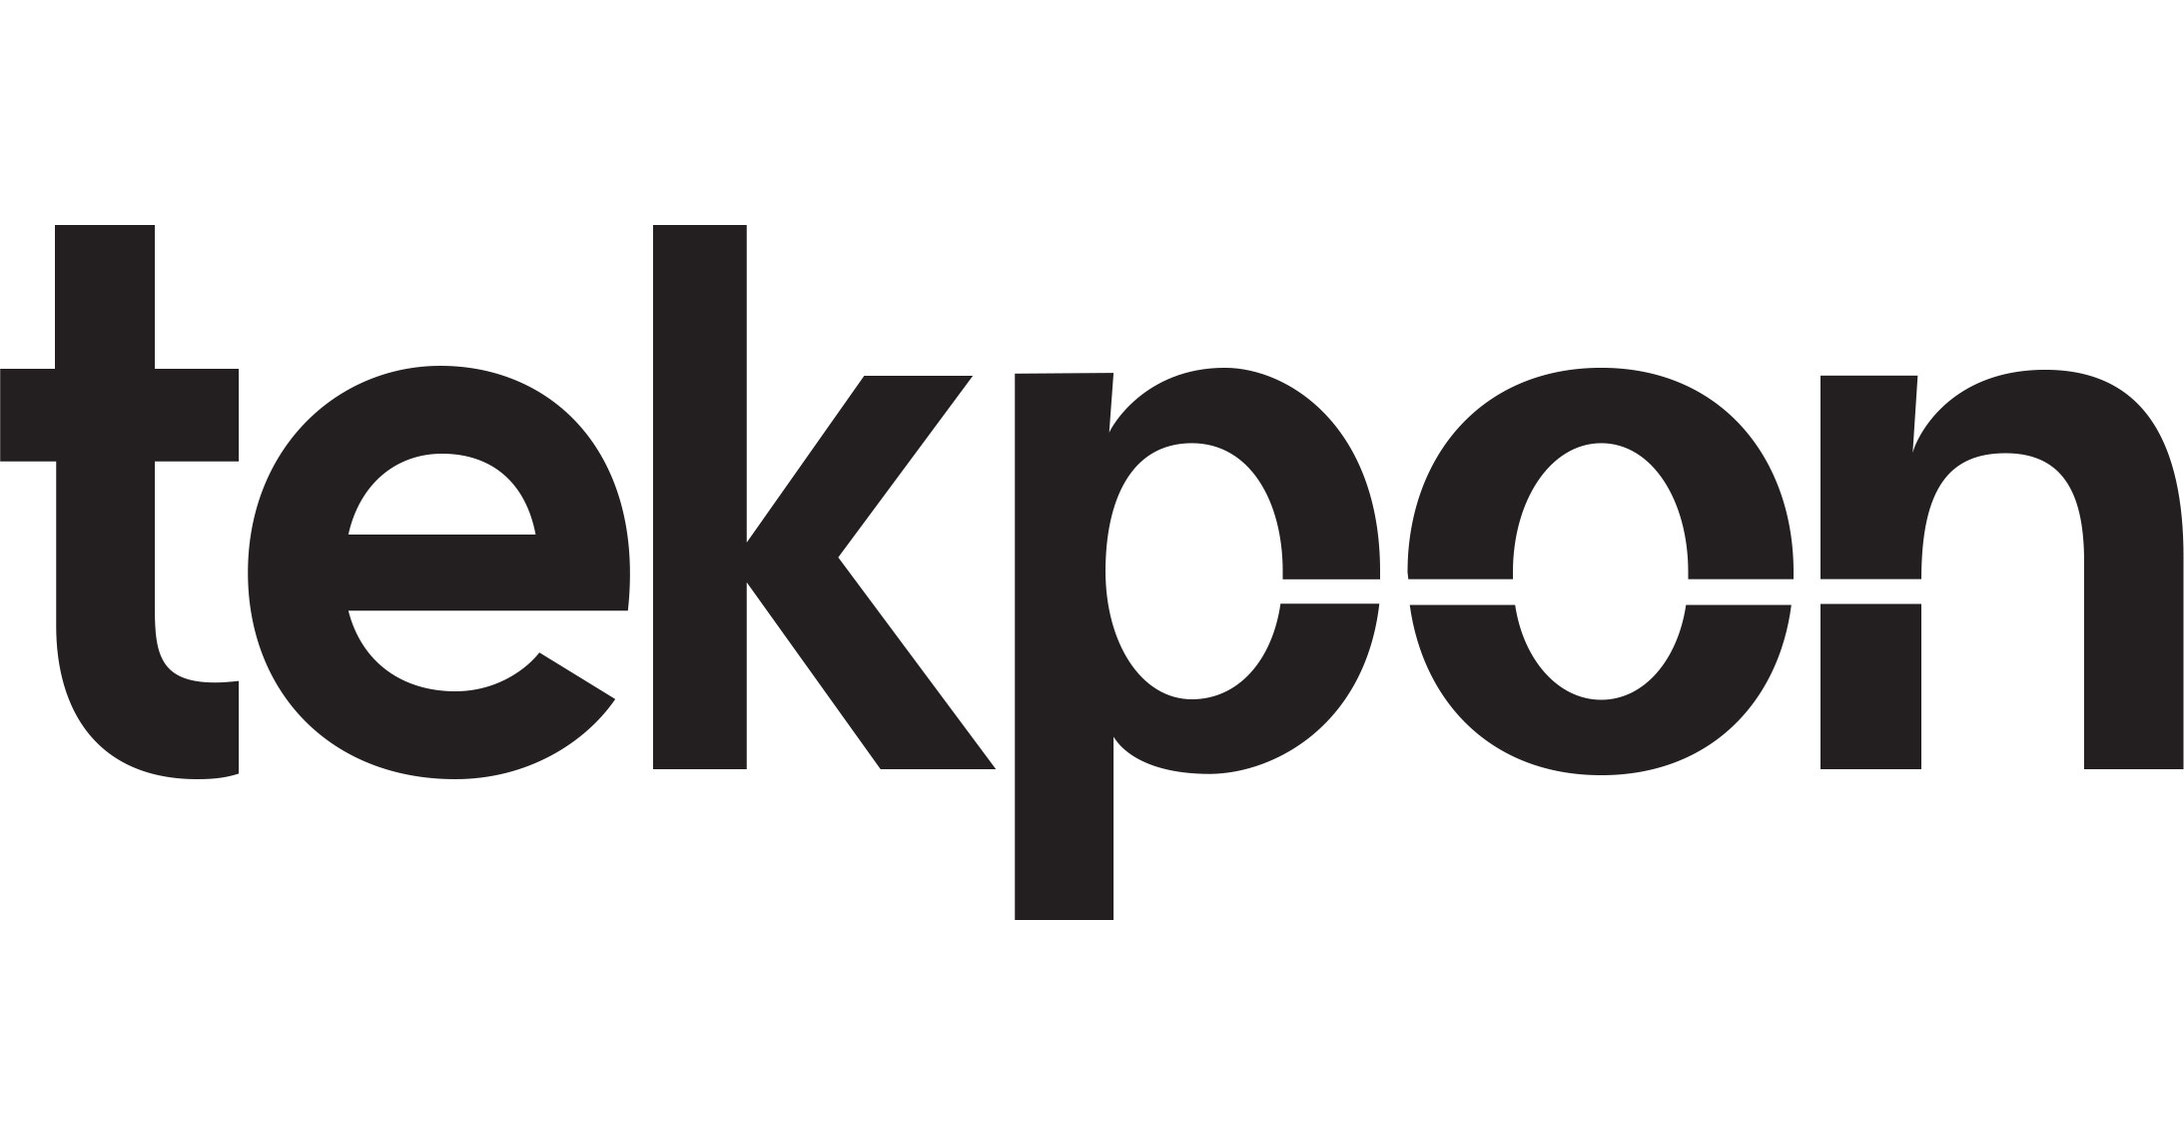 Tekpon mengumumkan kemitraan strategisnya dengan Pro Application Tech